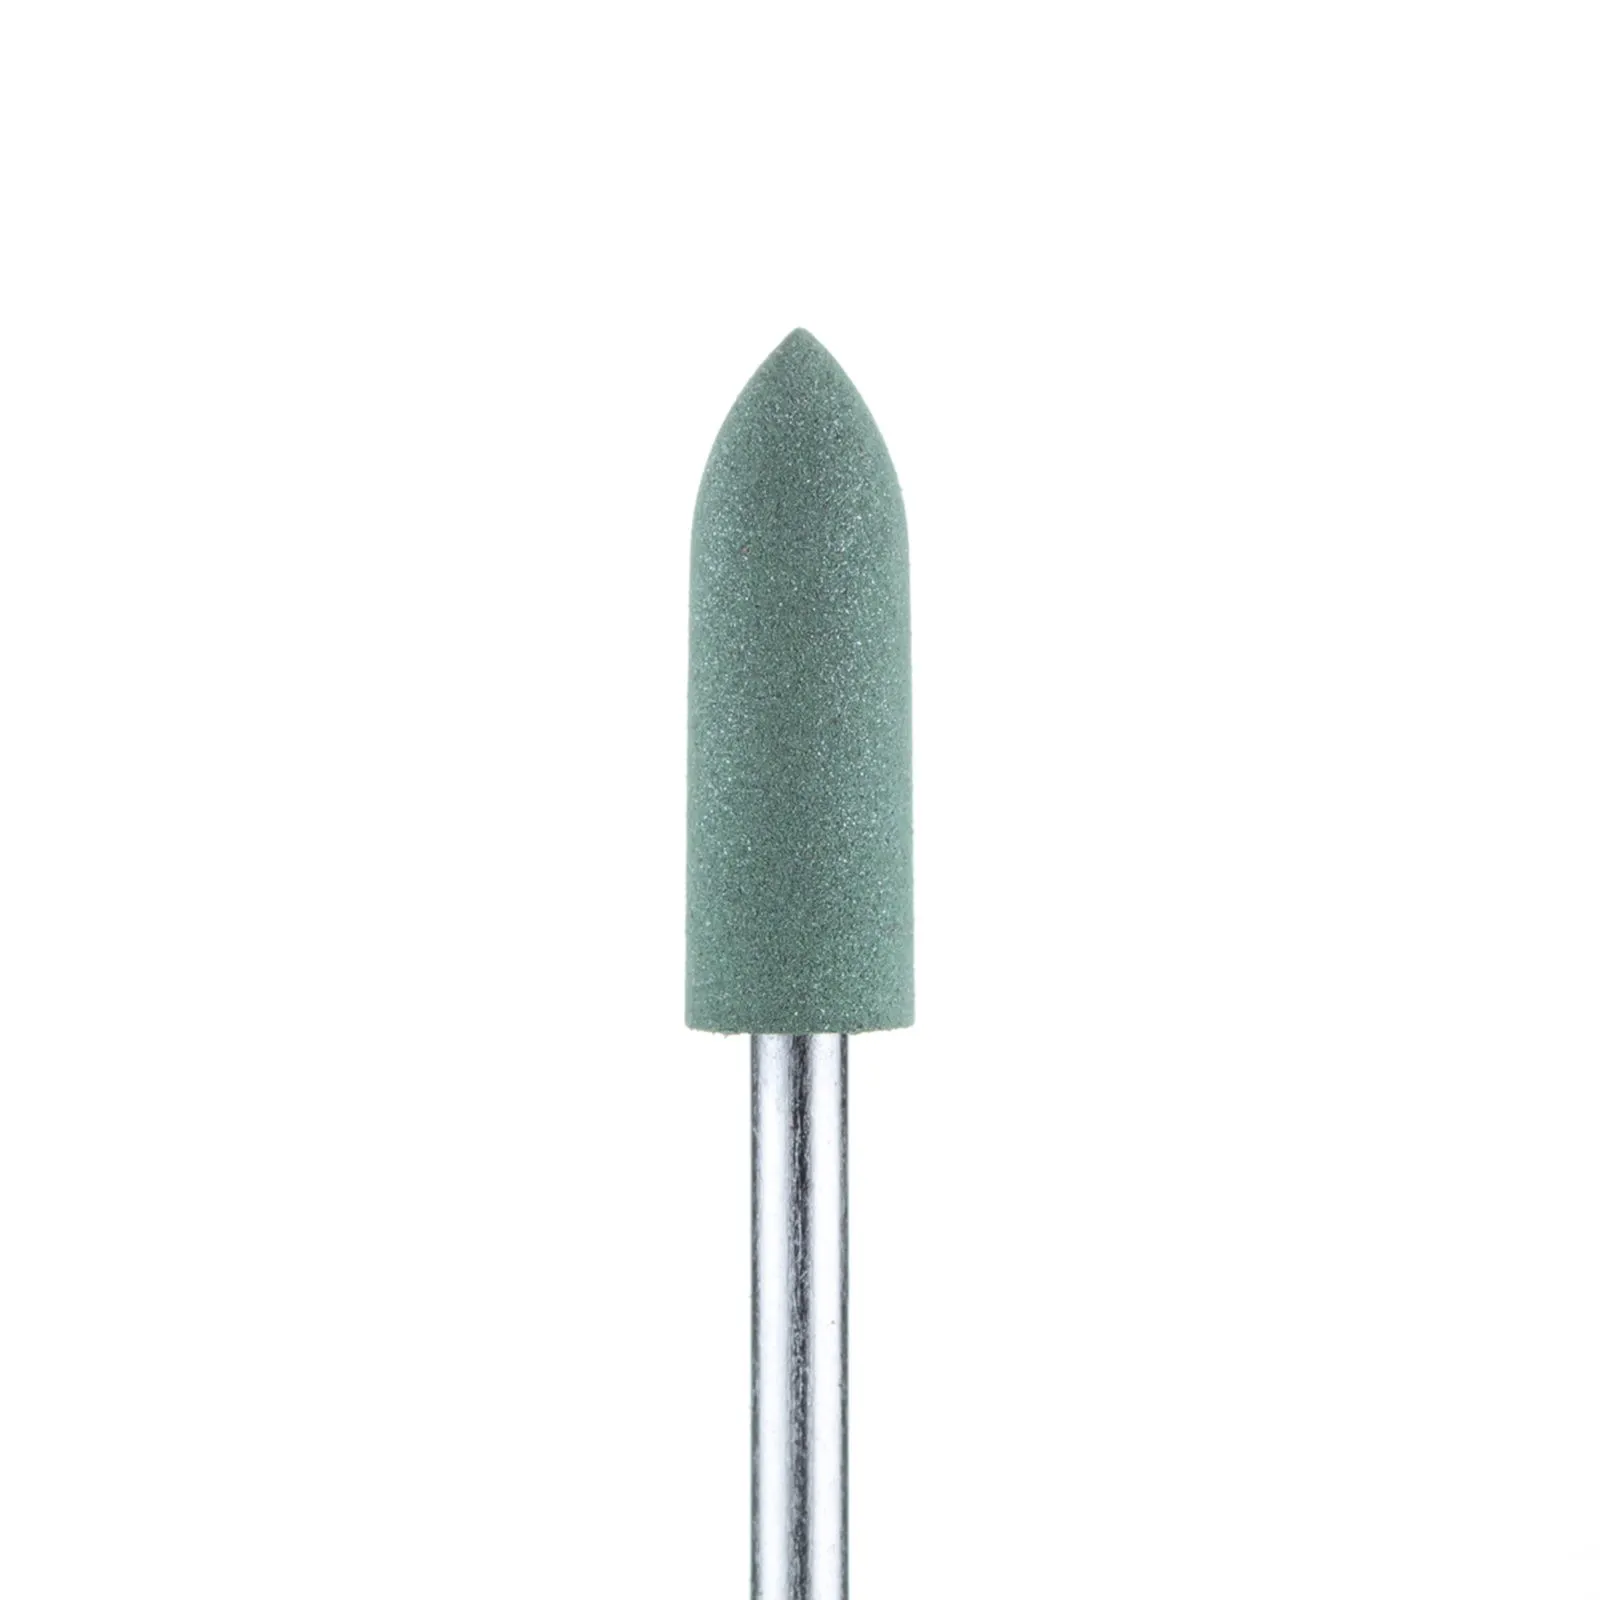 Полировщик закругленный цилиндр силиконовый зеленый (диаметр 5 мм)